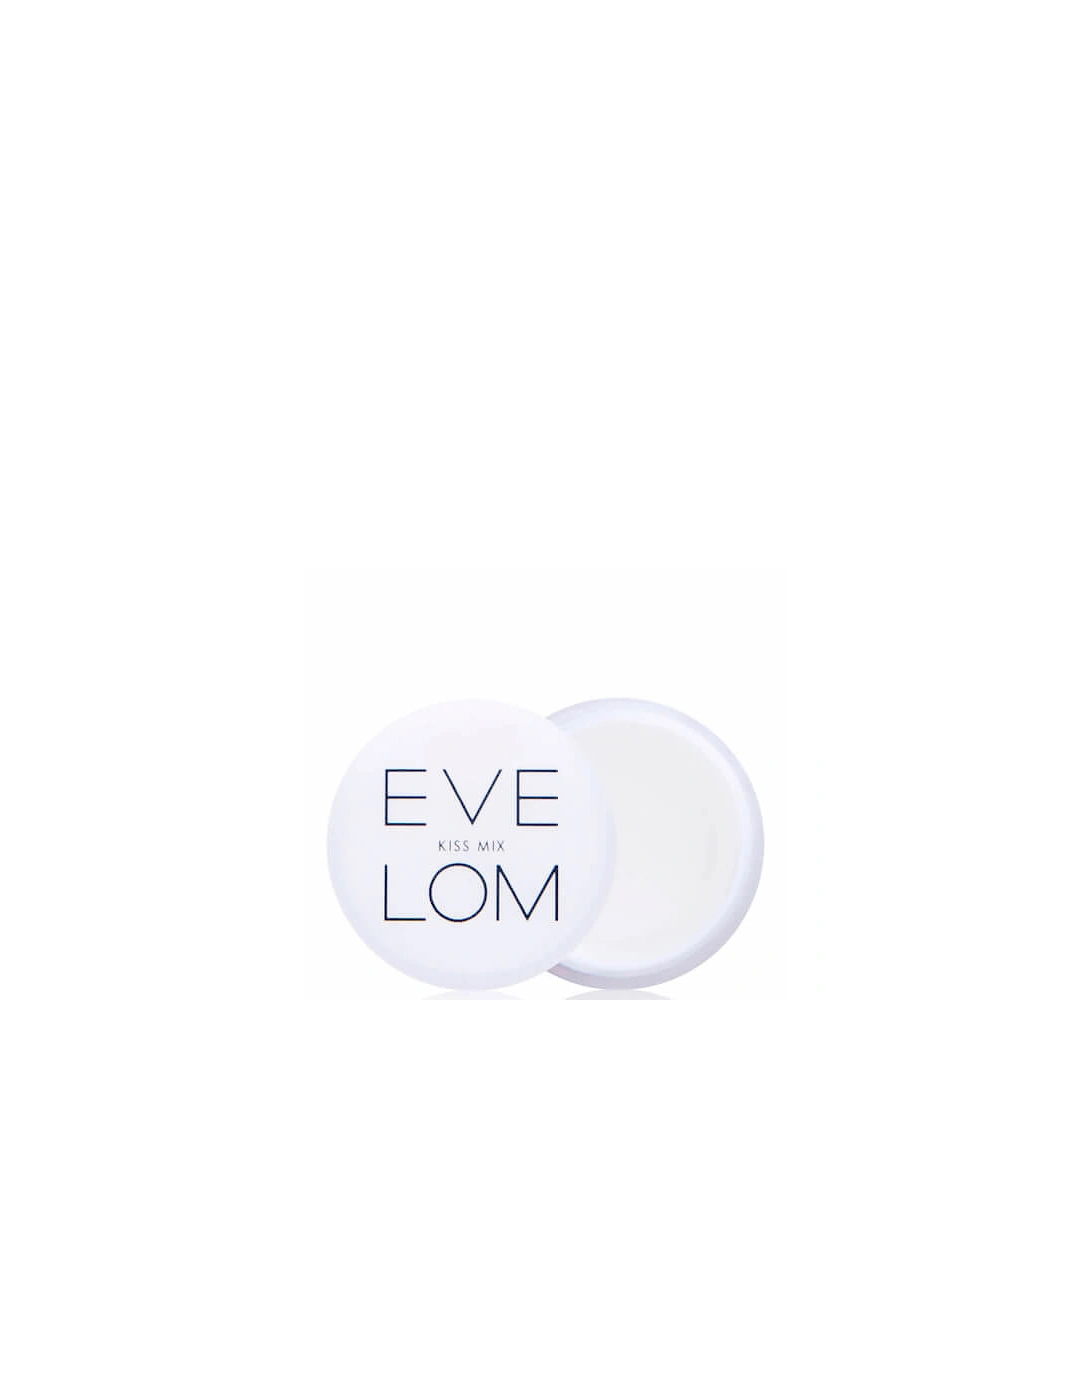 Kiss Mix Lip Treatment (7ml) - Eve Lom, 2 of 1